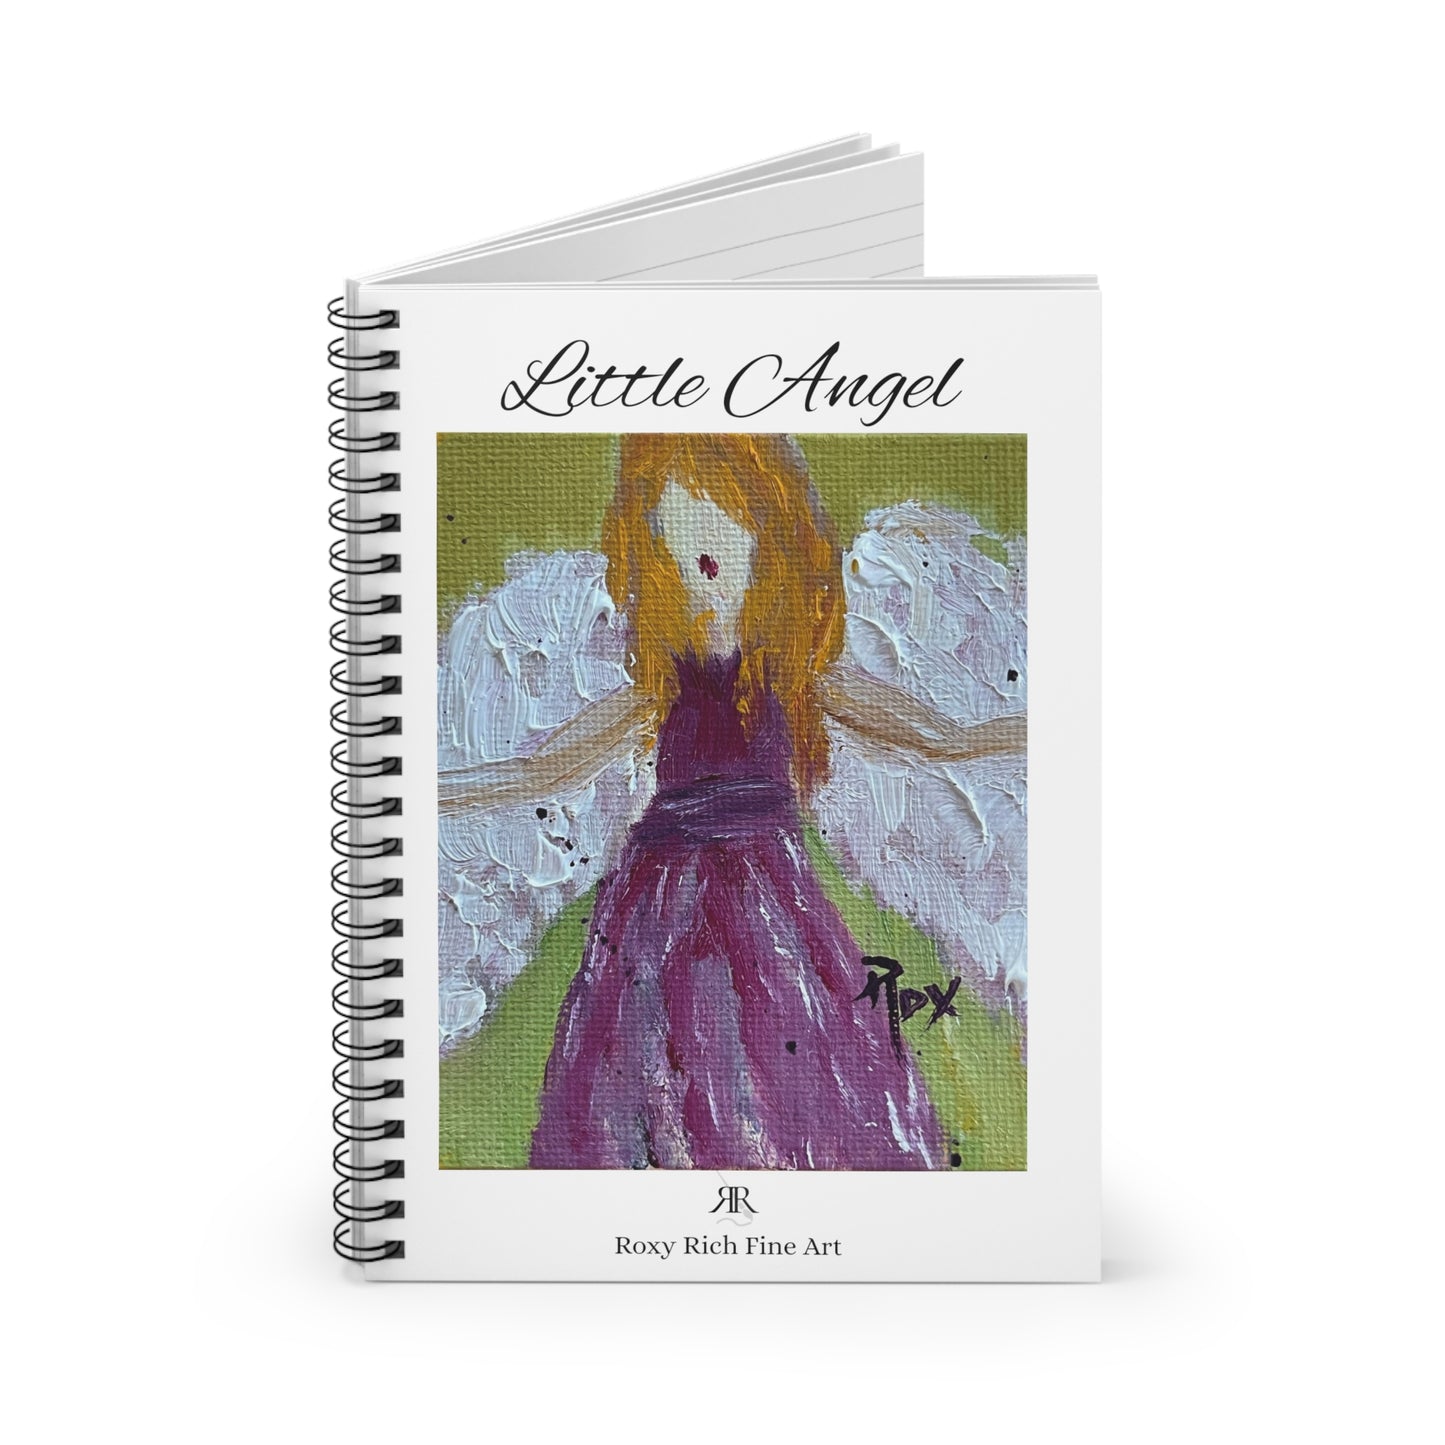 Little Angel "Healing Angel" Spiral Notebook